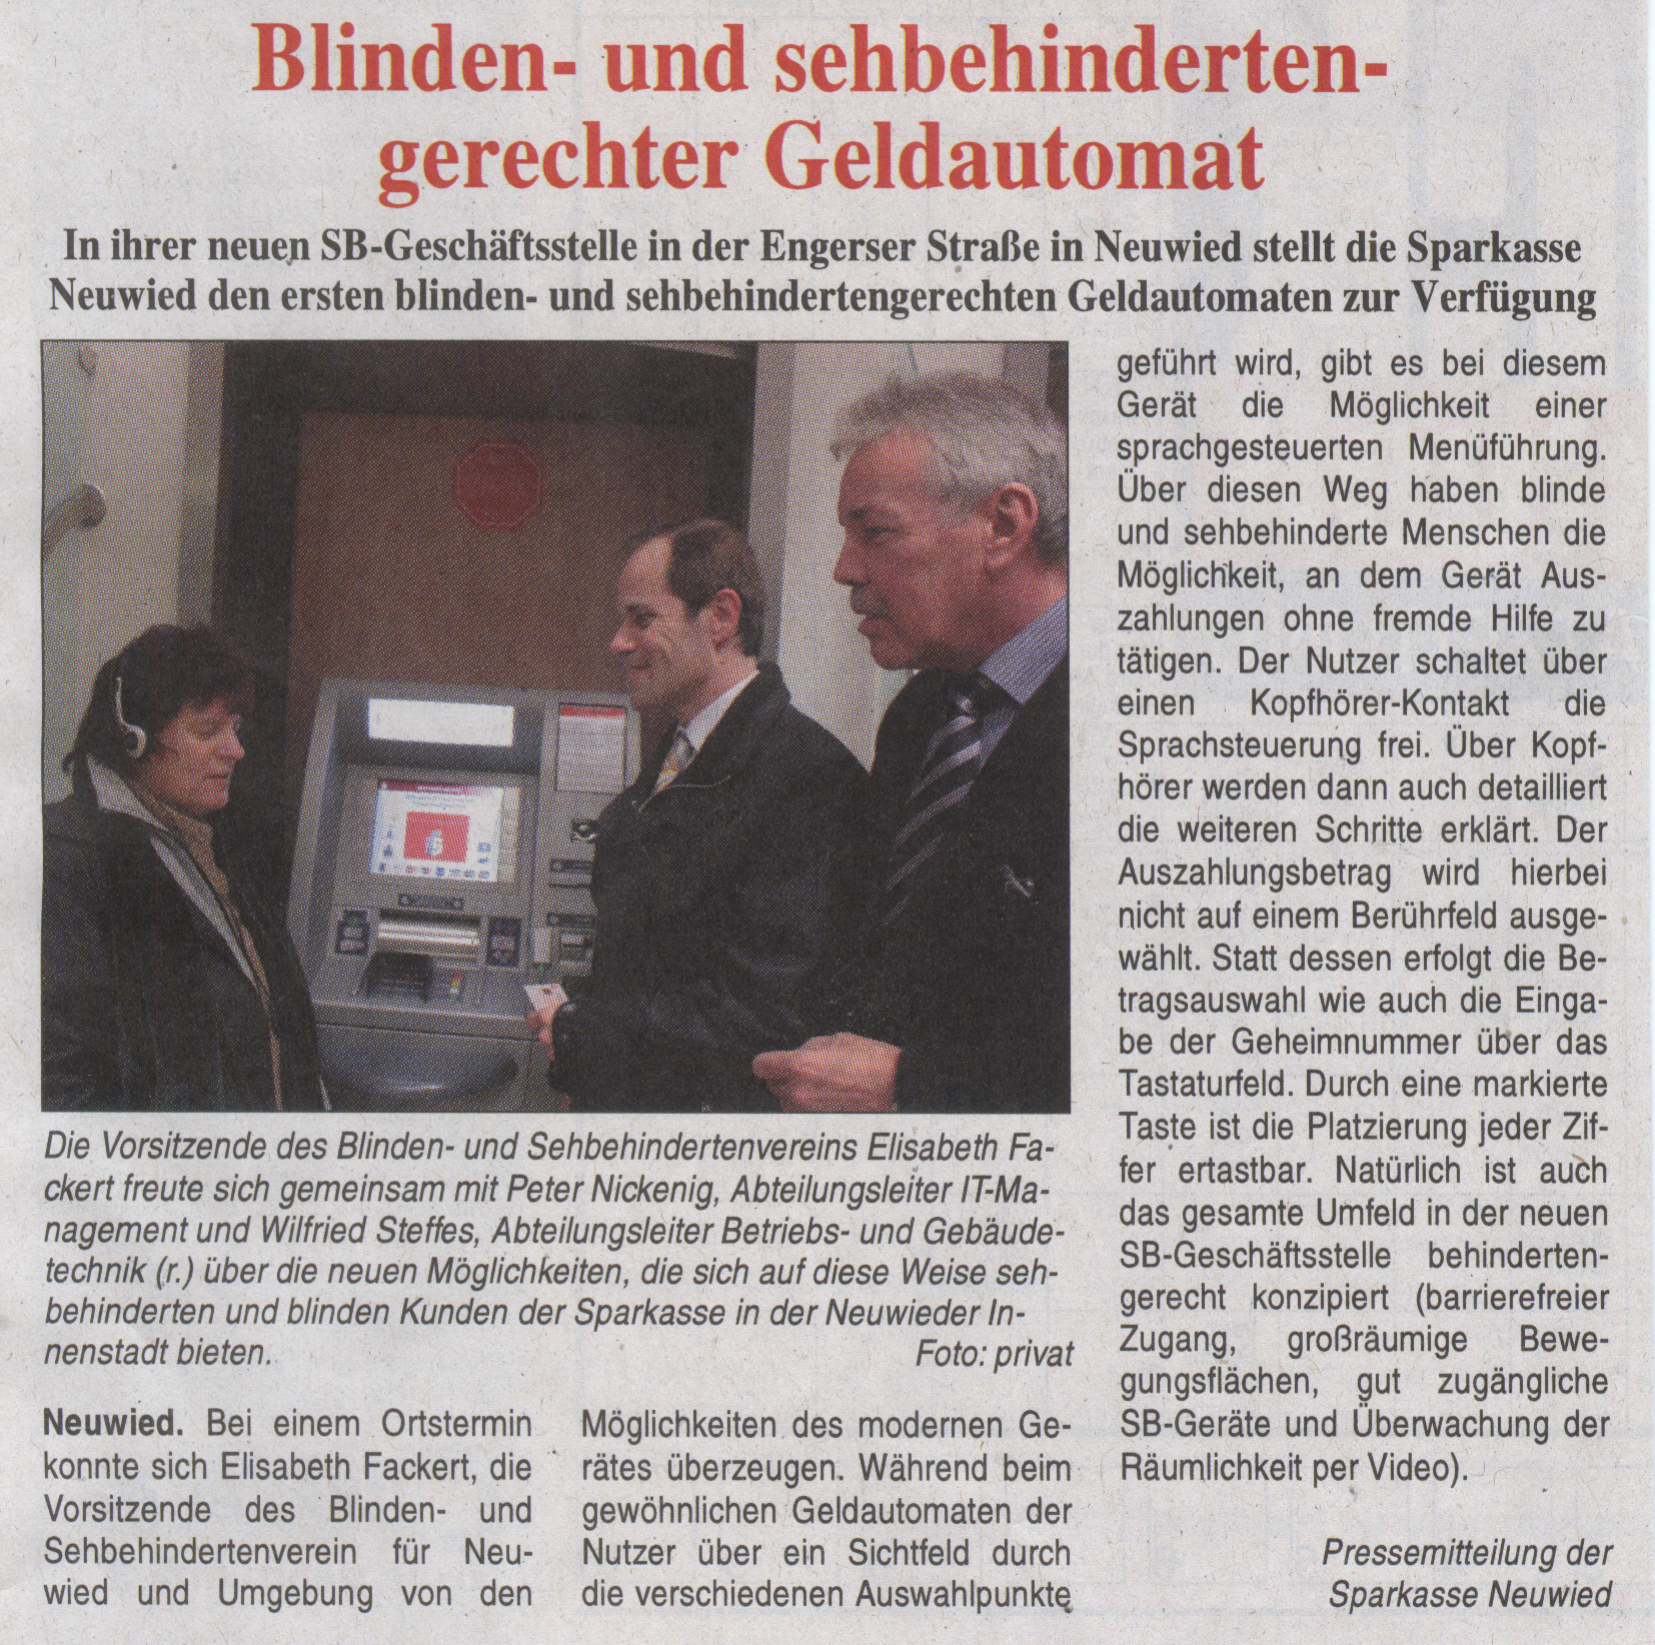 Presseartikel zum barrierefreien Geldautomat der Sparkasse Neuwied